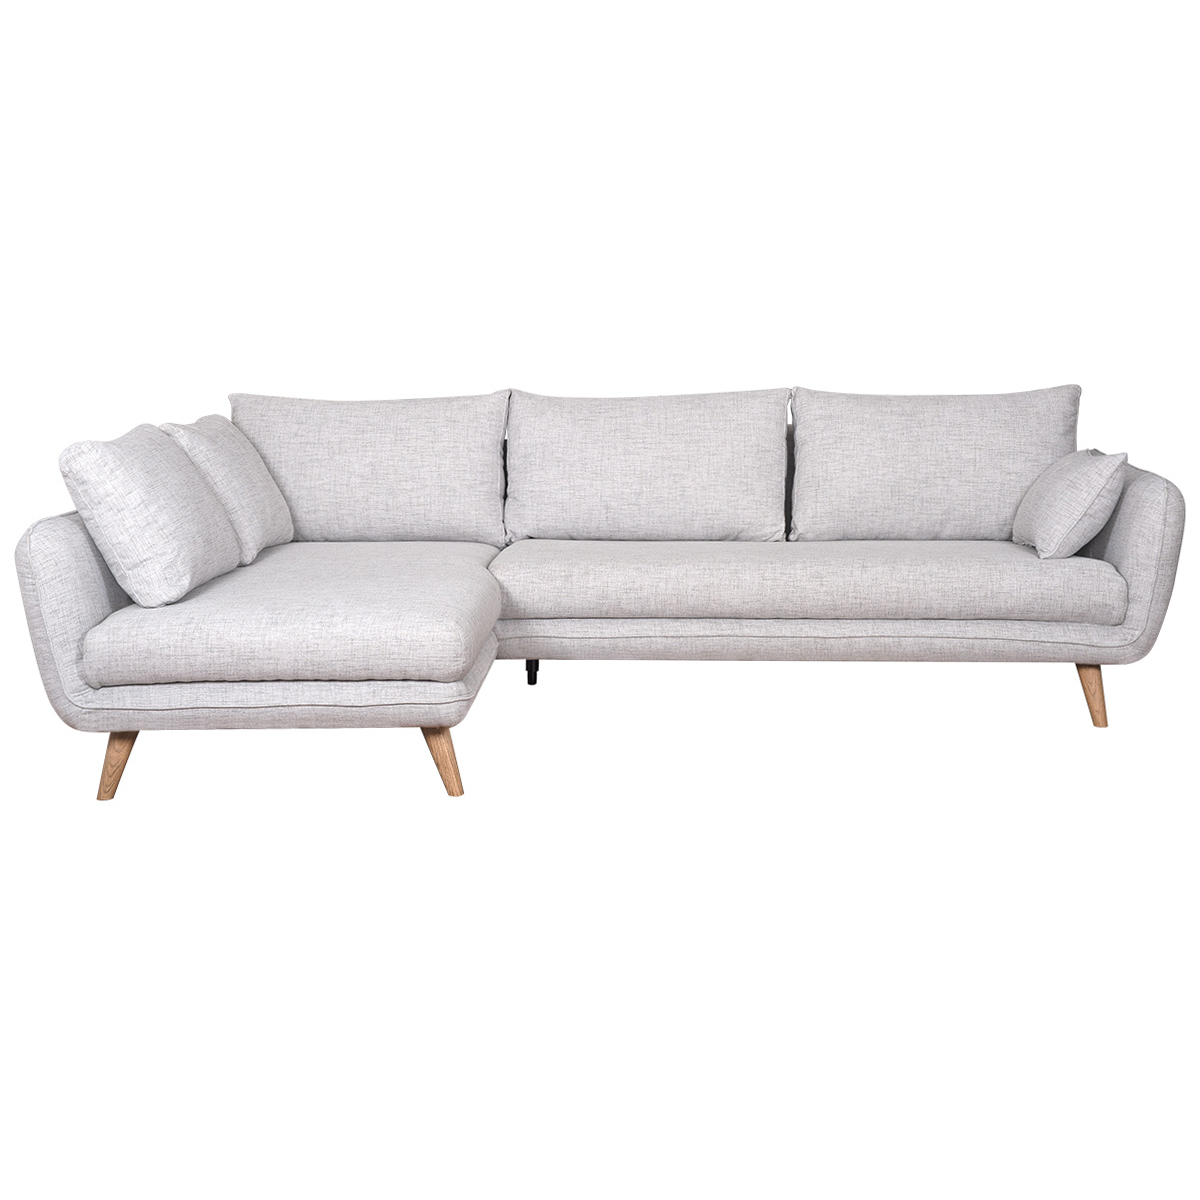 Canapé d'angle gauche scandinave 5 places en tissu gris clair chiné et bois clair CREEP vue1